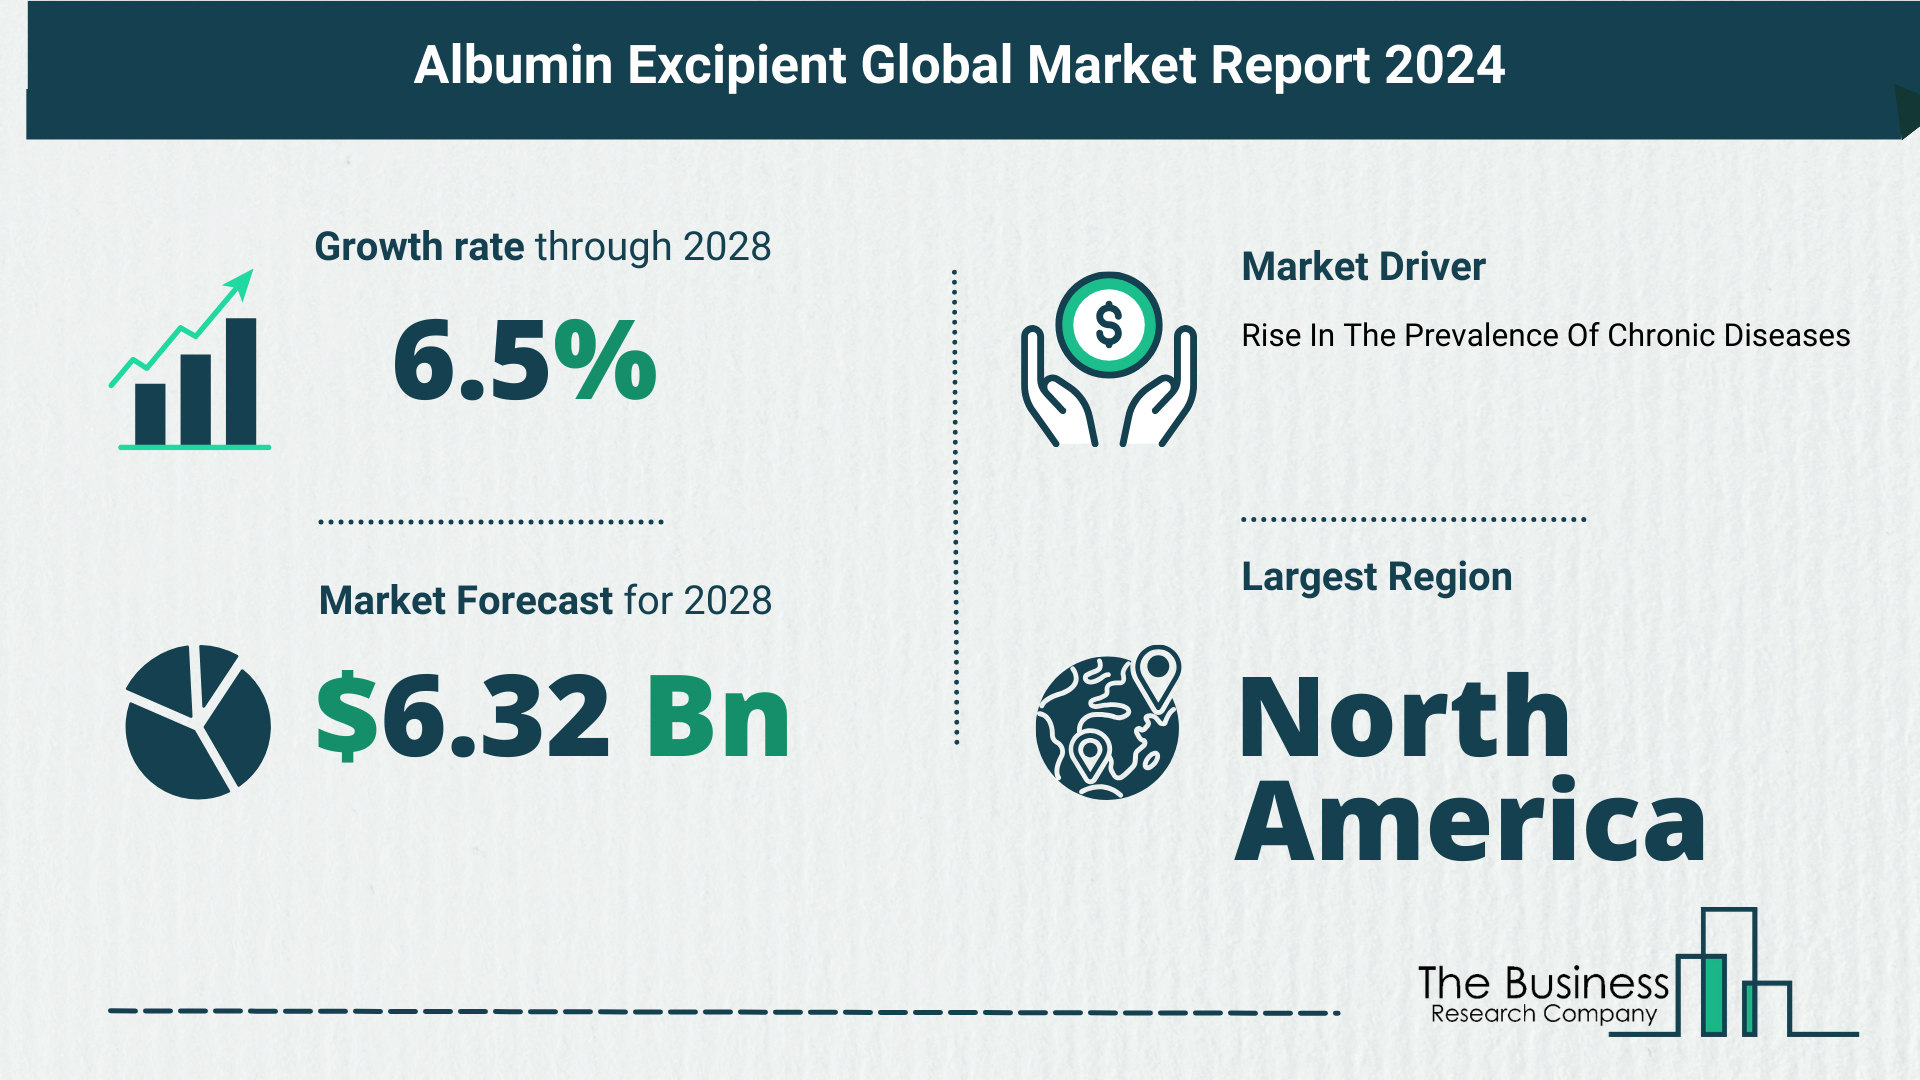 Global Albumin Excipient Market